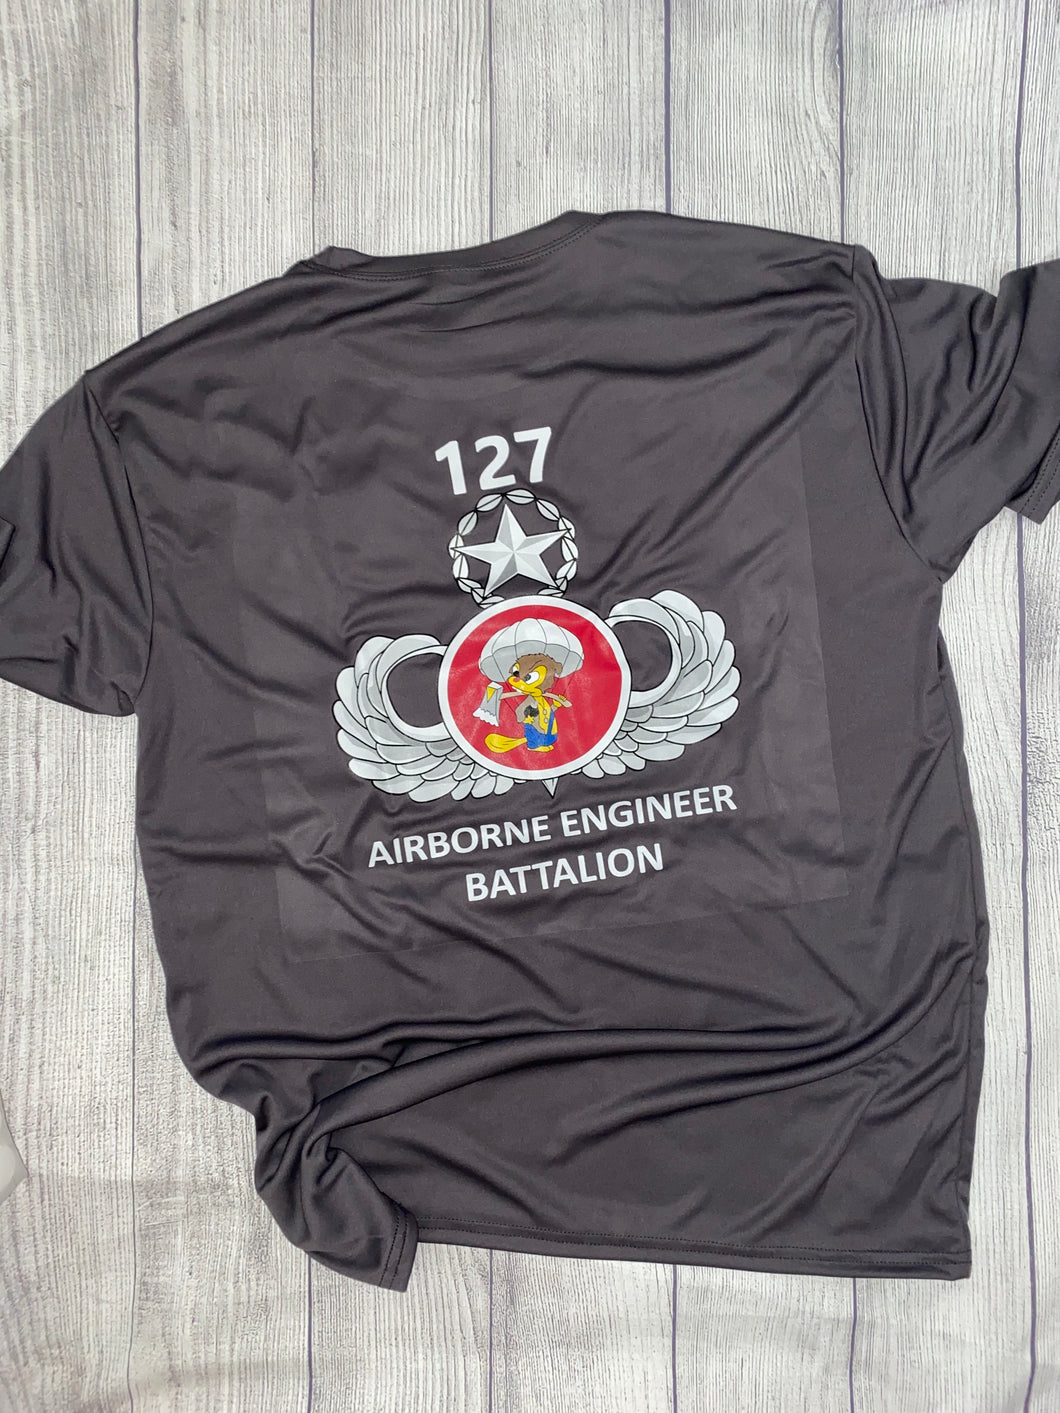 127th AEB Shirts